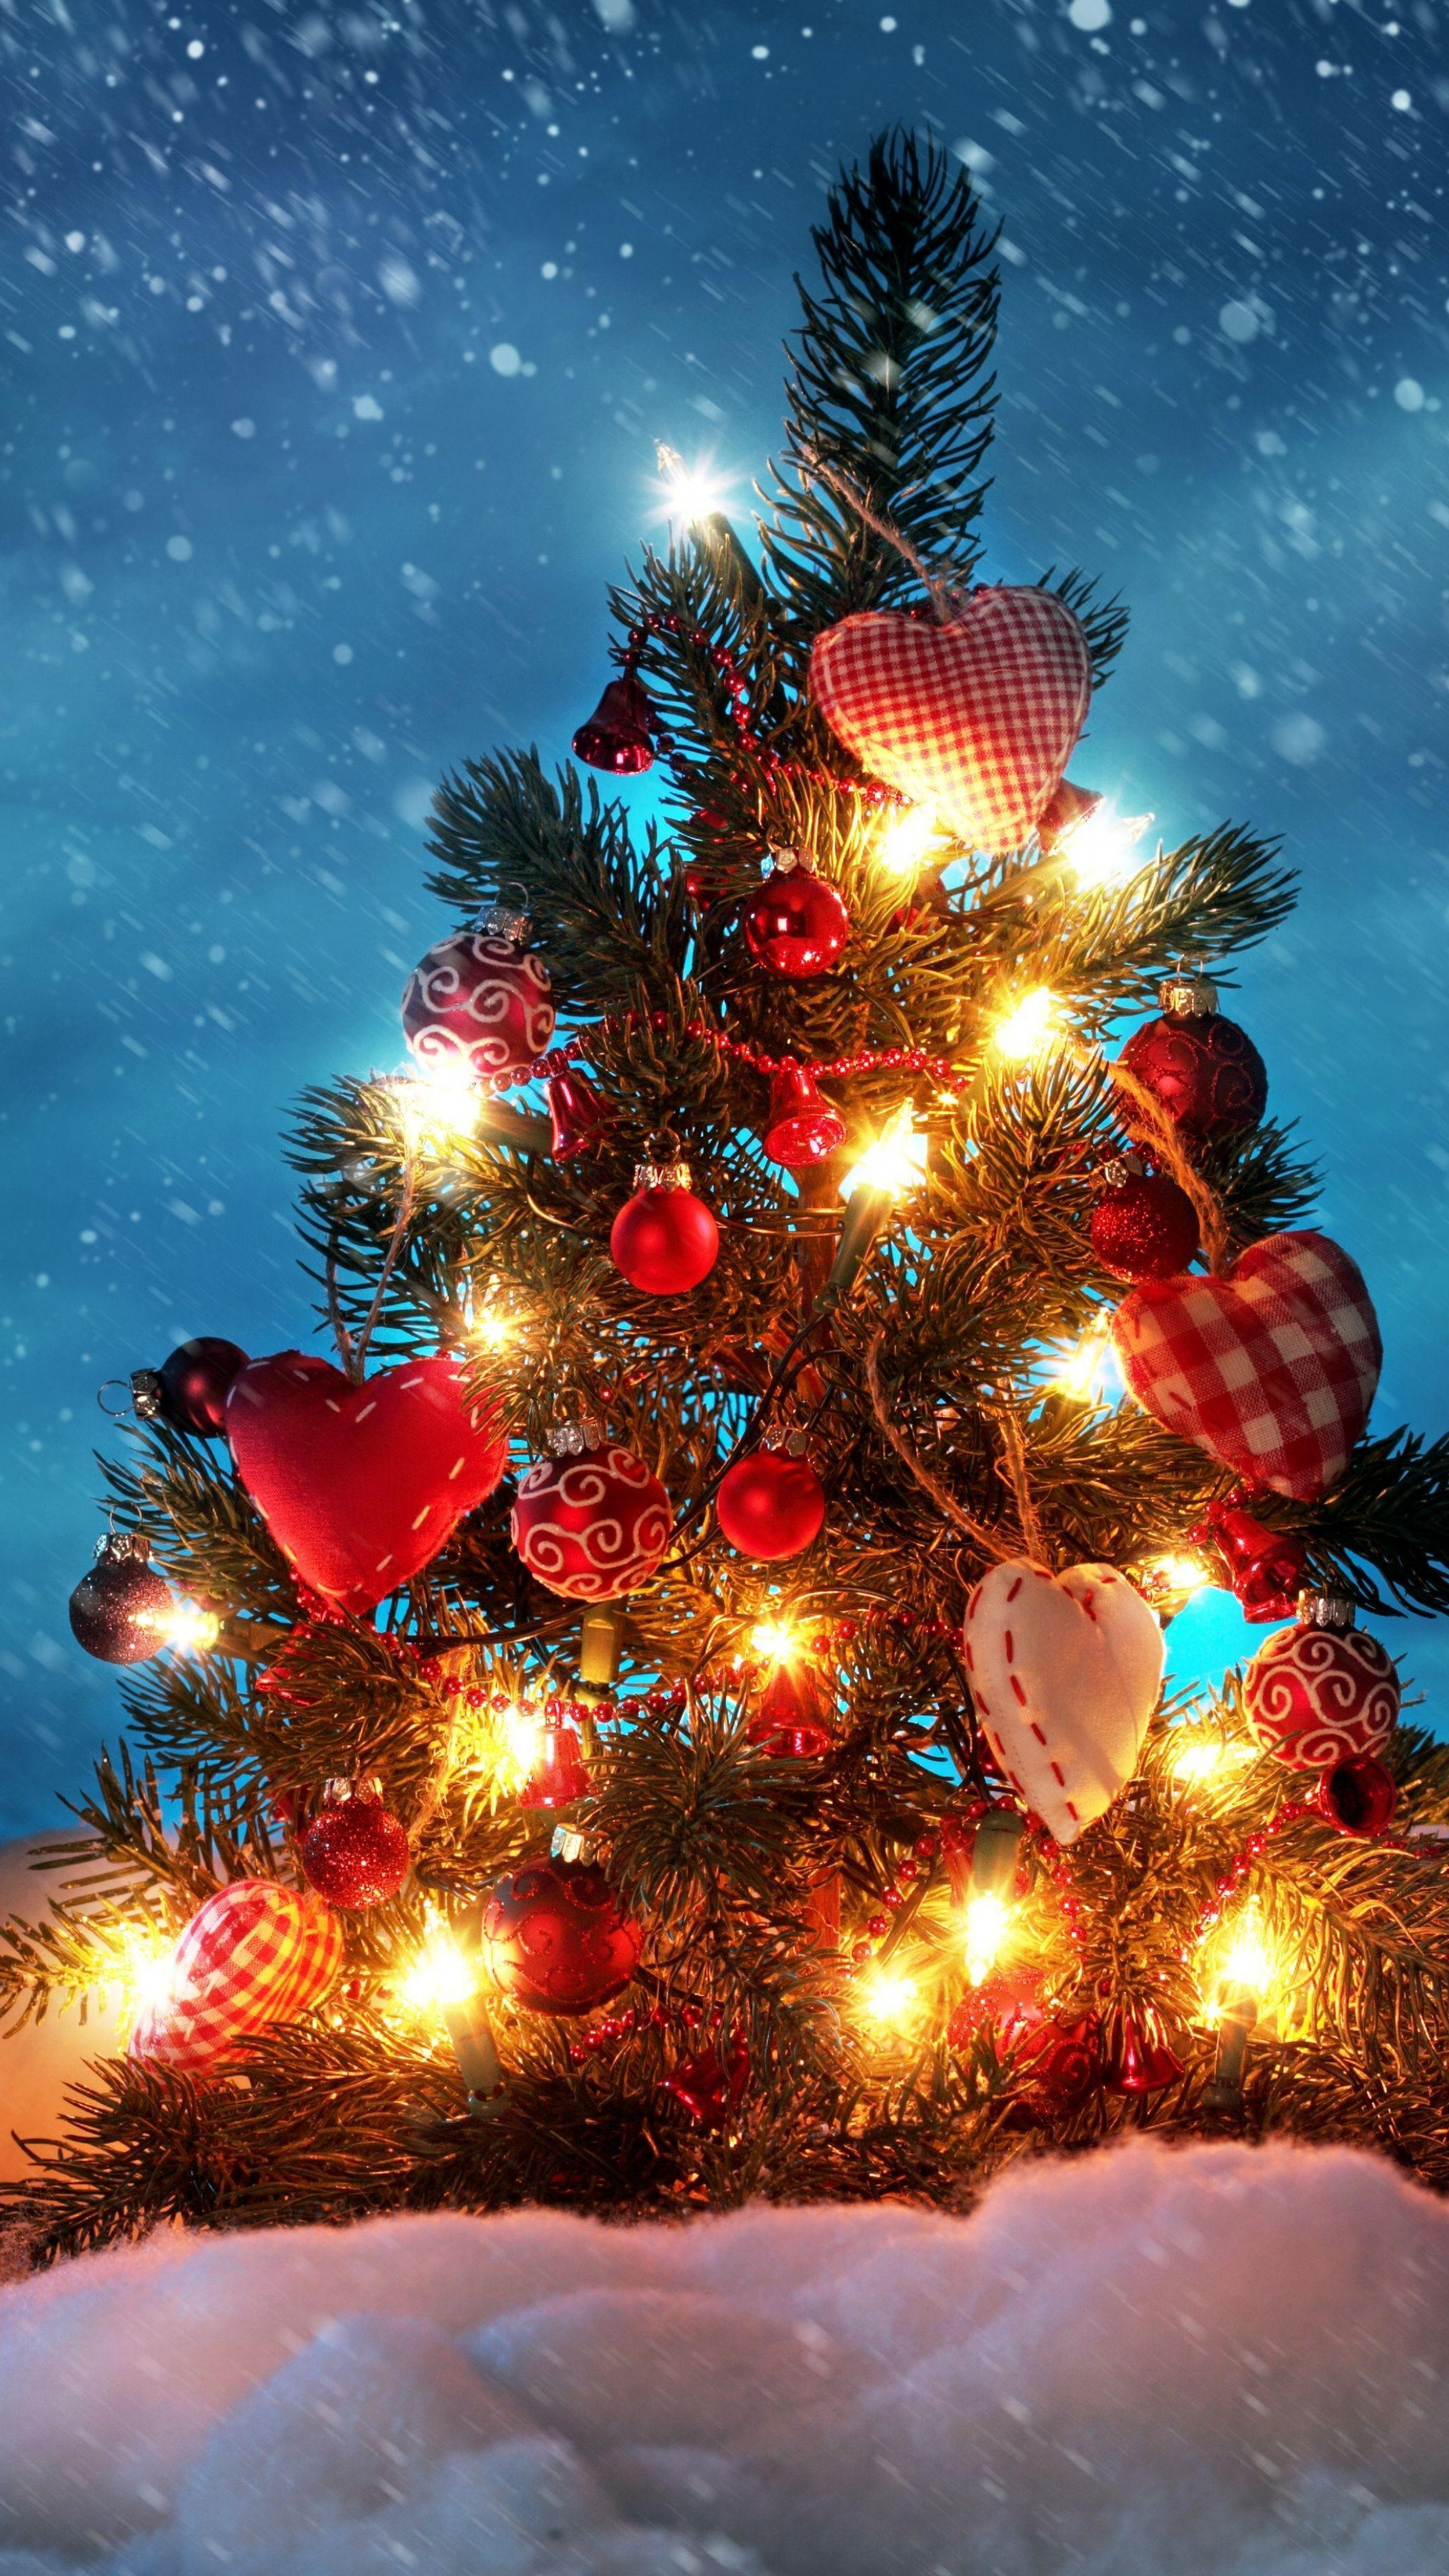 árbol de navidad fondos de escritorio,árbol de navidad,decoración navideña,árbol,abeto de colorado,navidad